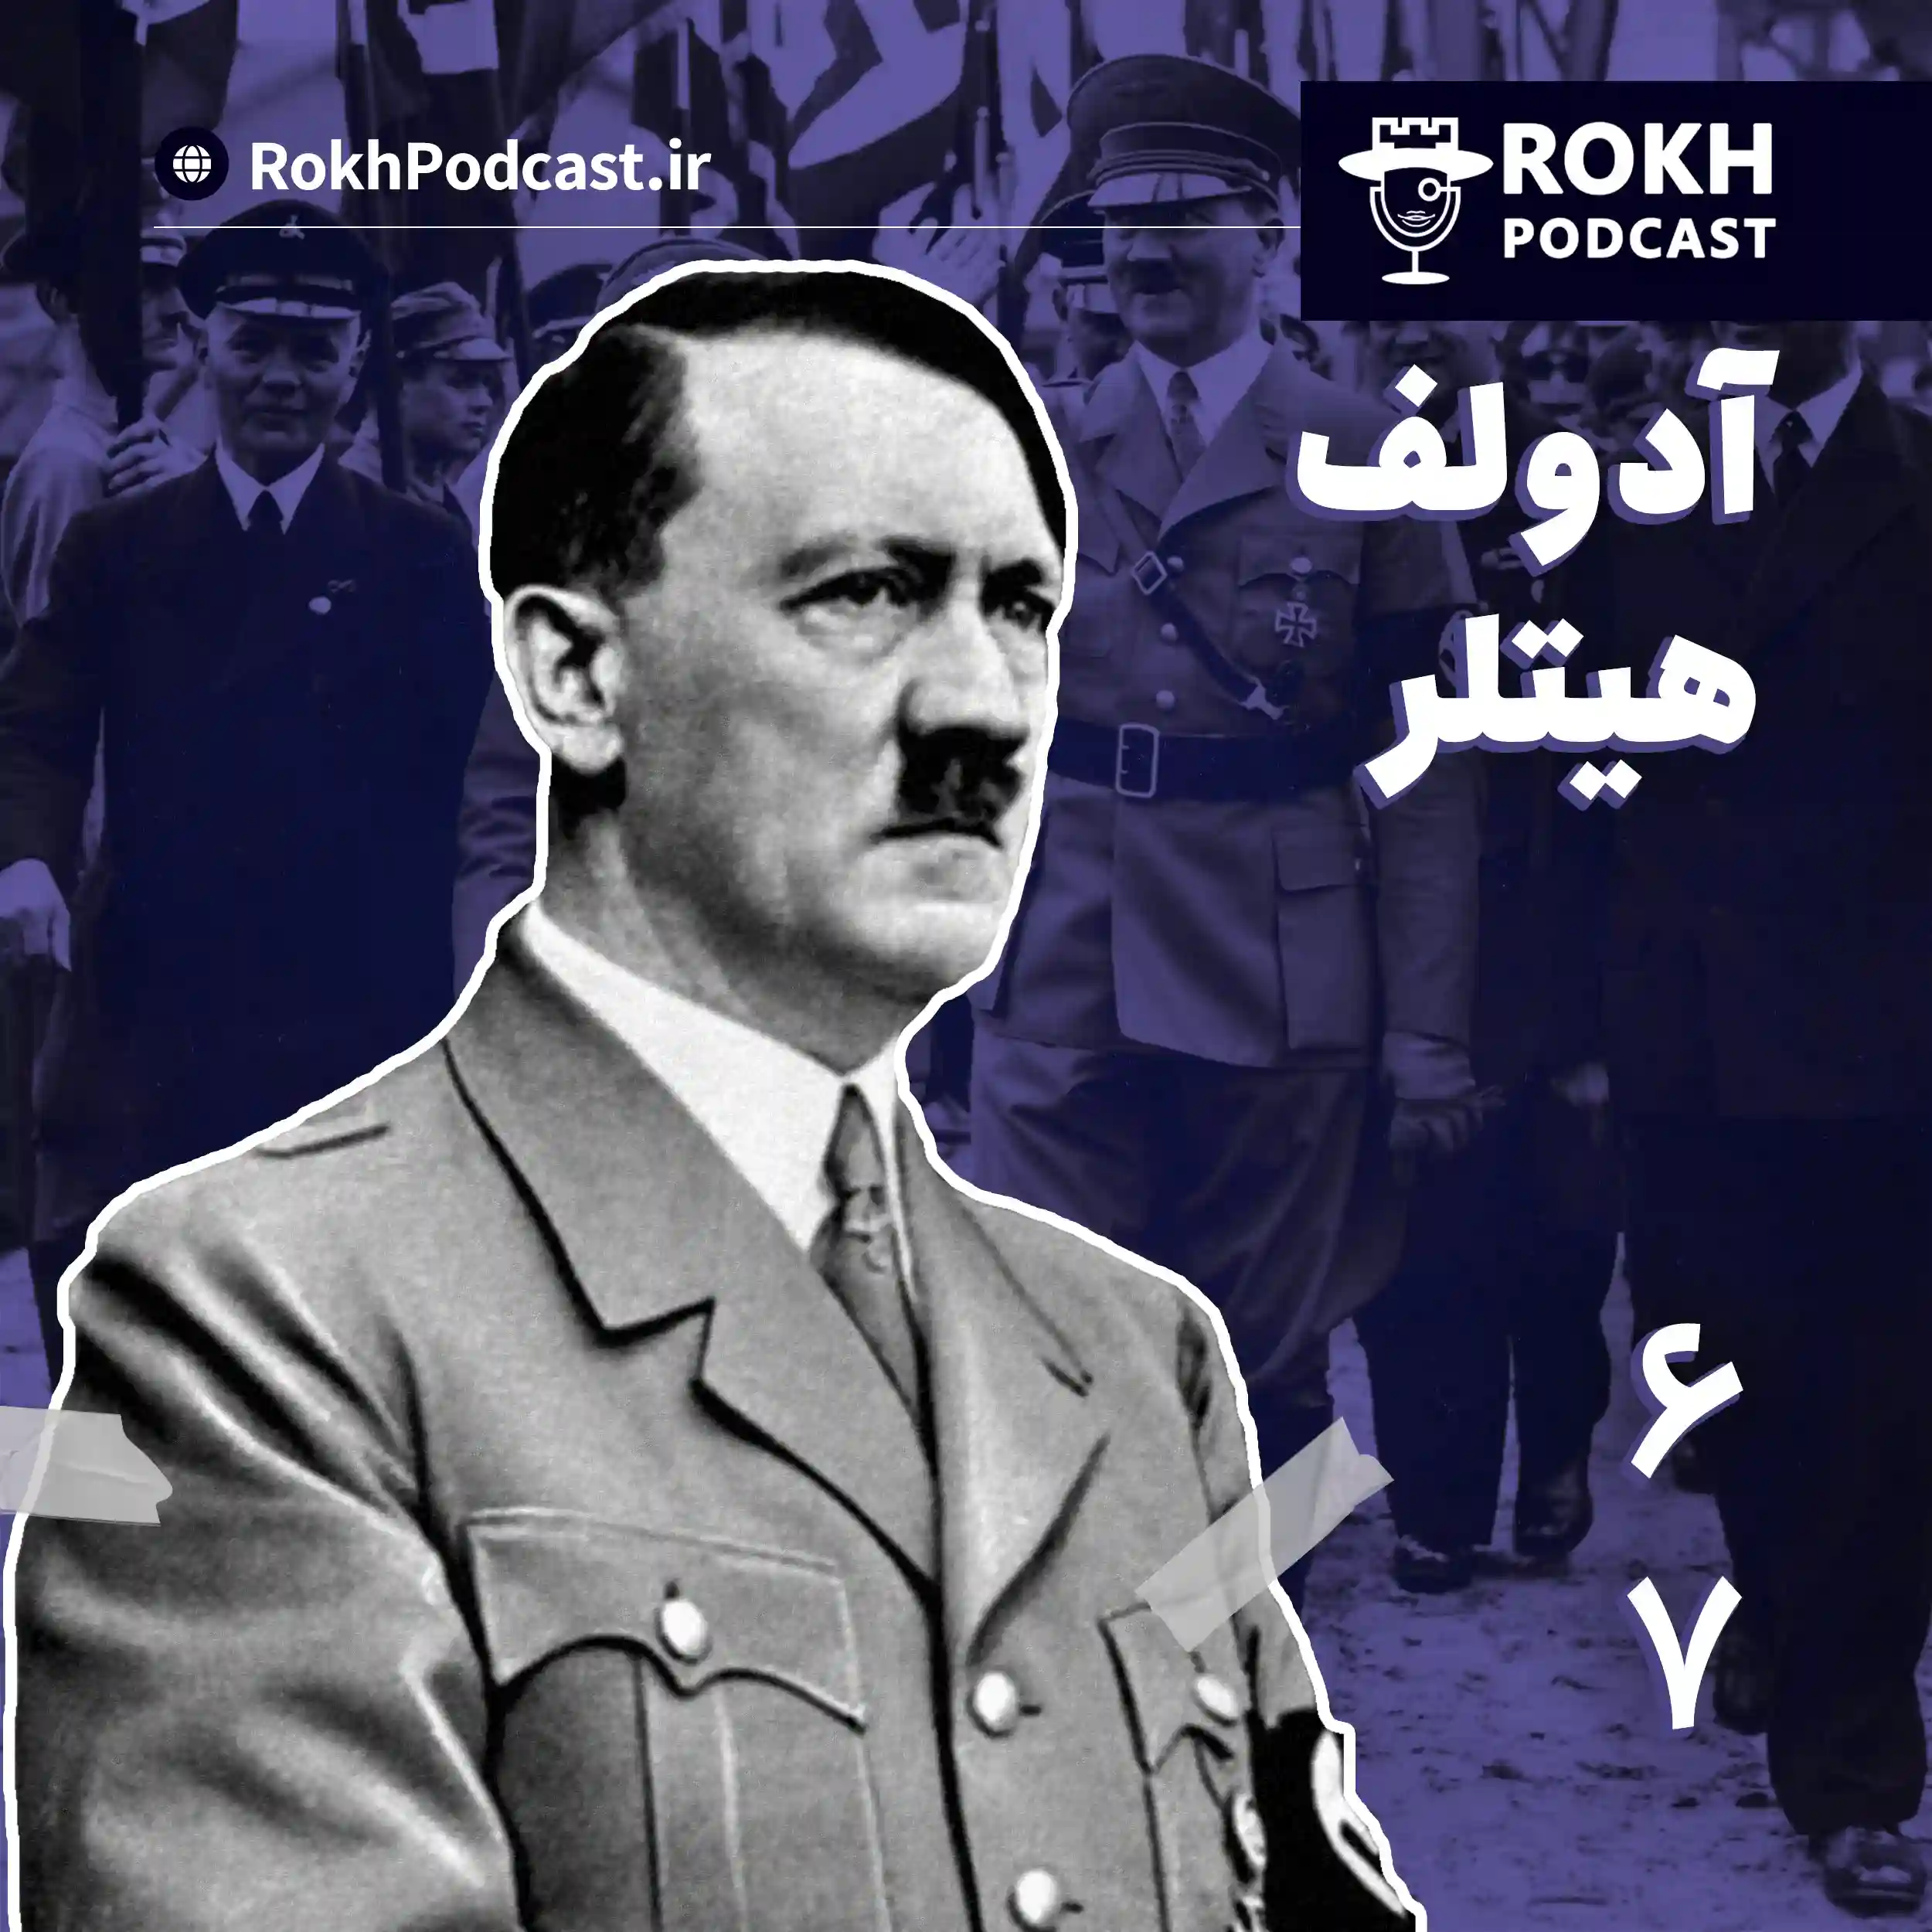 داستان زندگی هیتلر